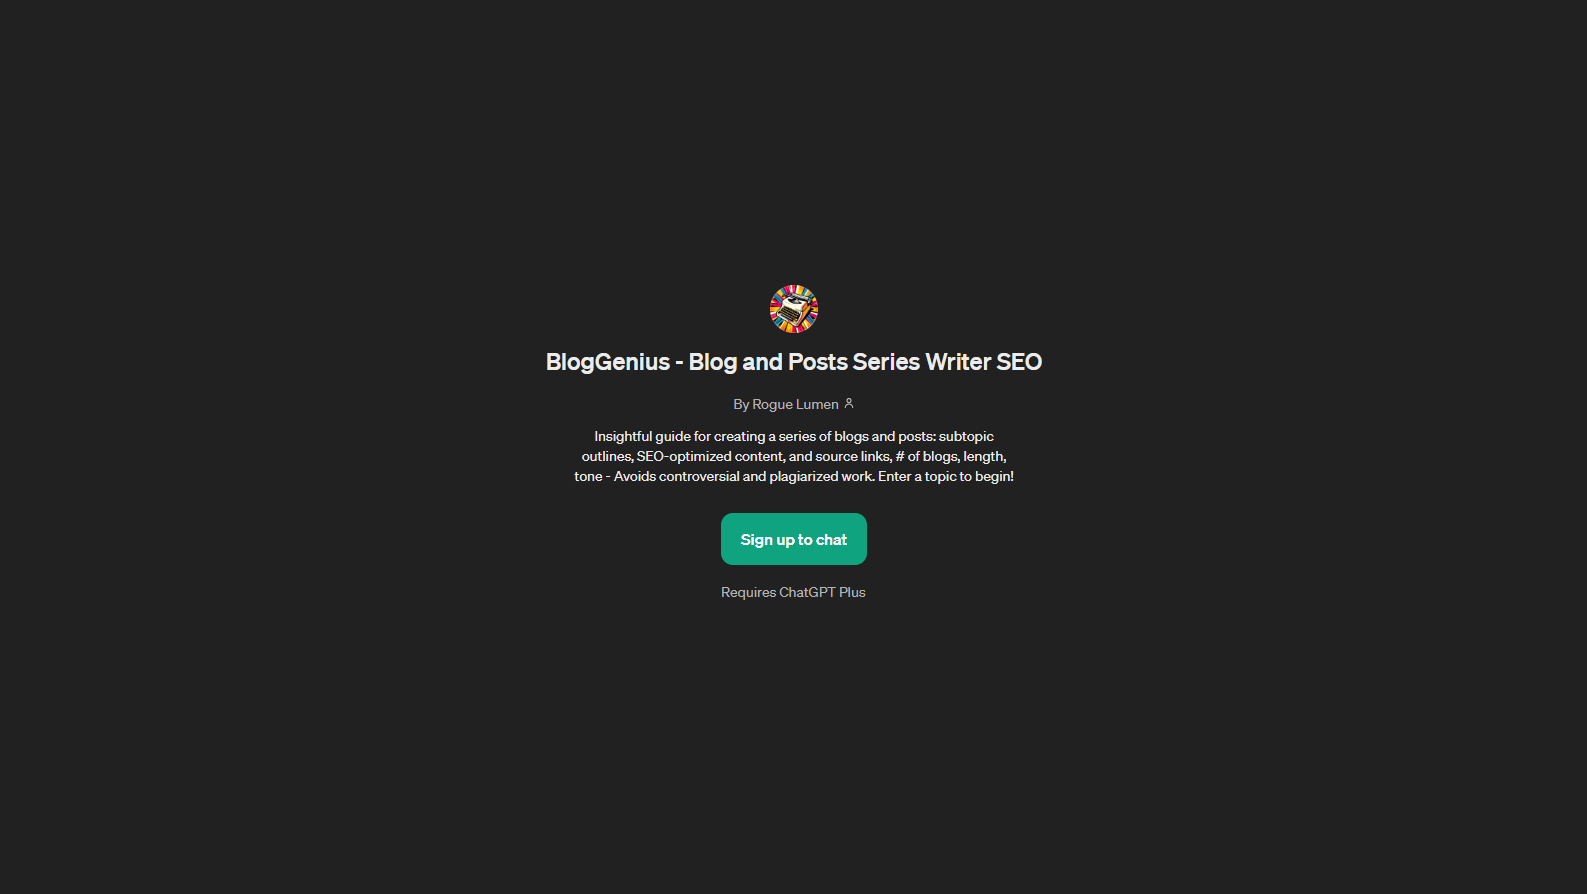 BlogGenius website